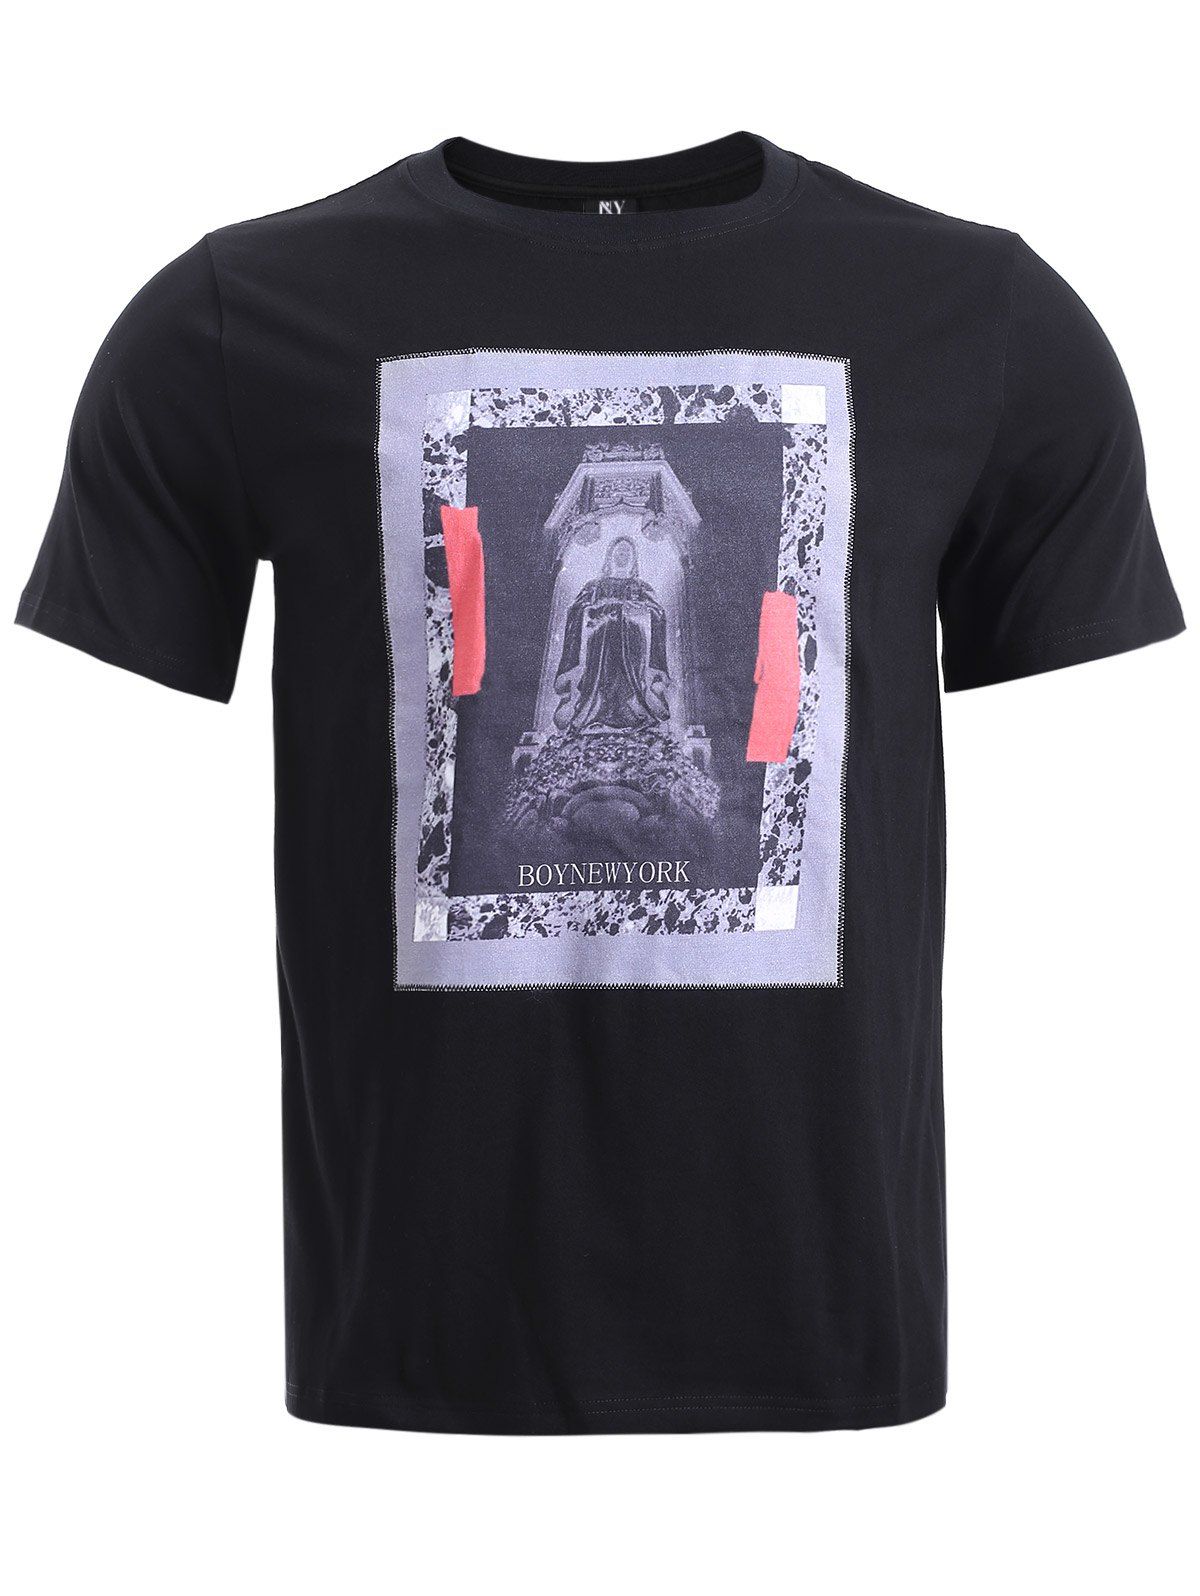 Motif abstrait Applique T-shirt manches courtes - Noir S